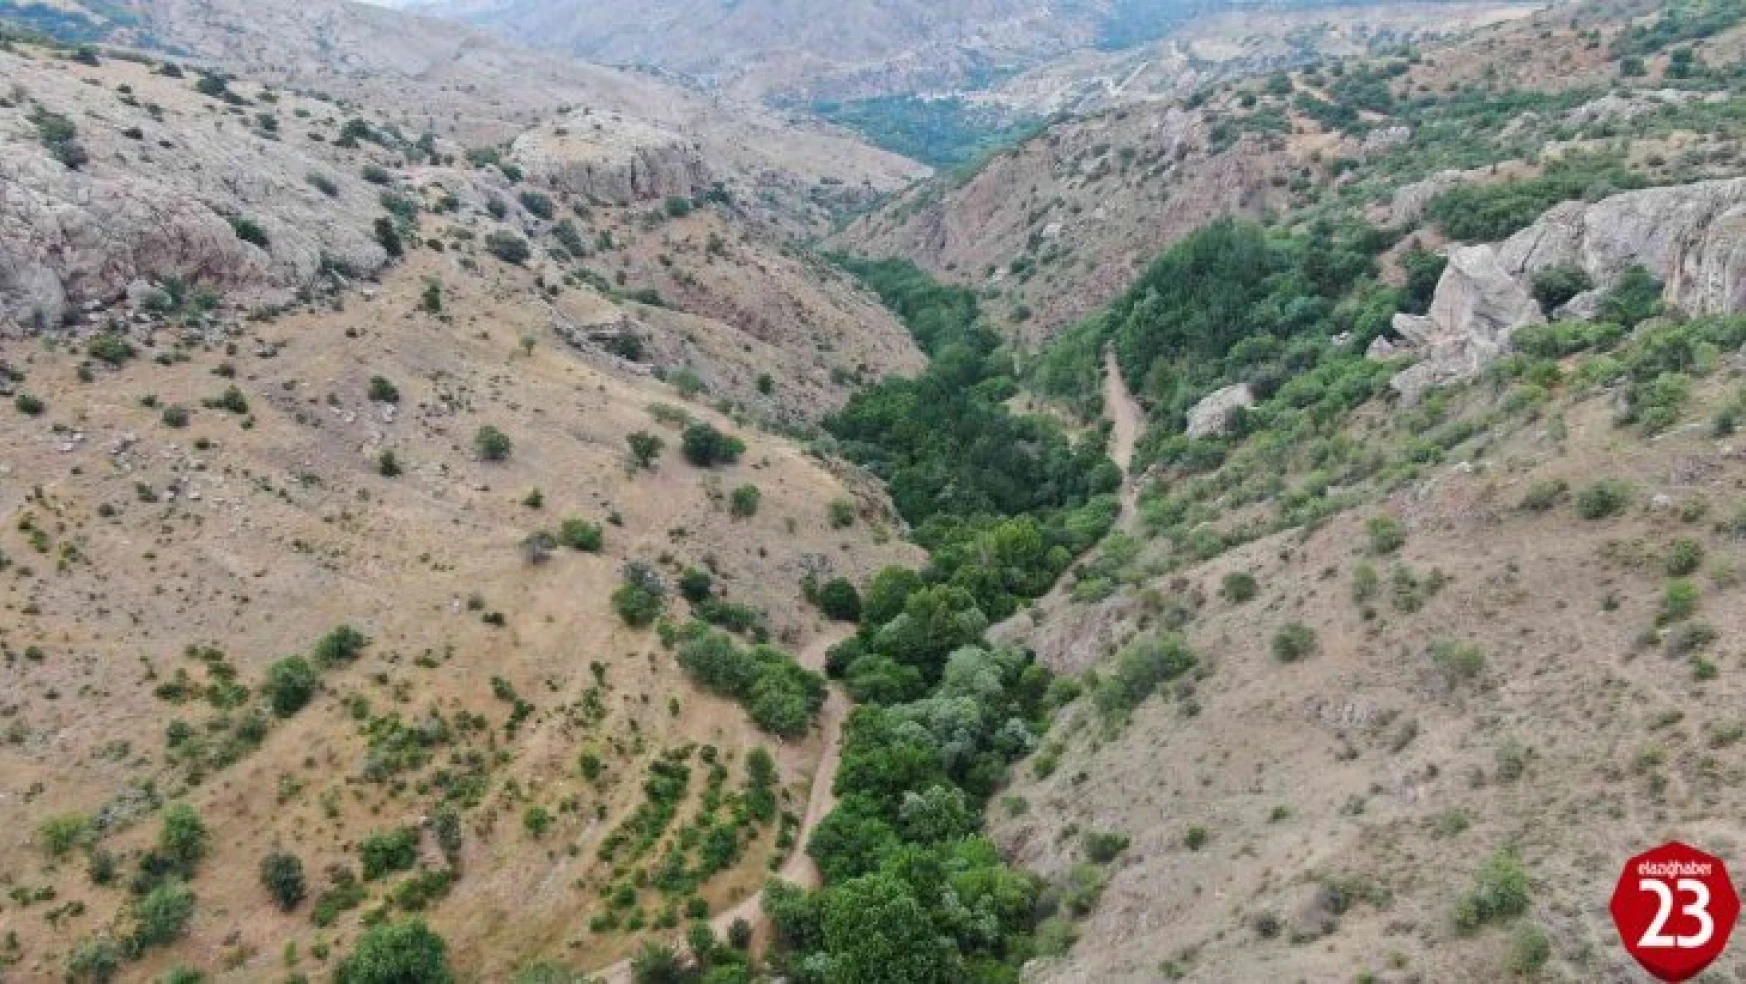 Ölbe vadisi ve Deve Mağarası turizme kazandırılmayı bekliyor